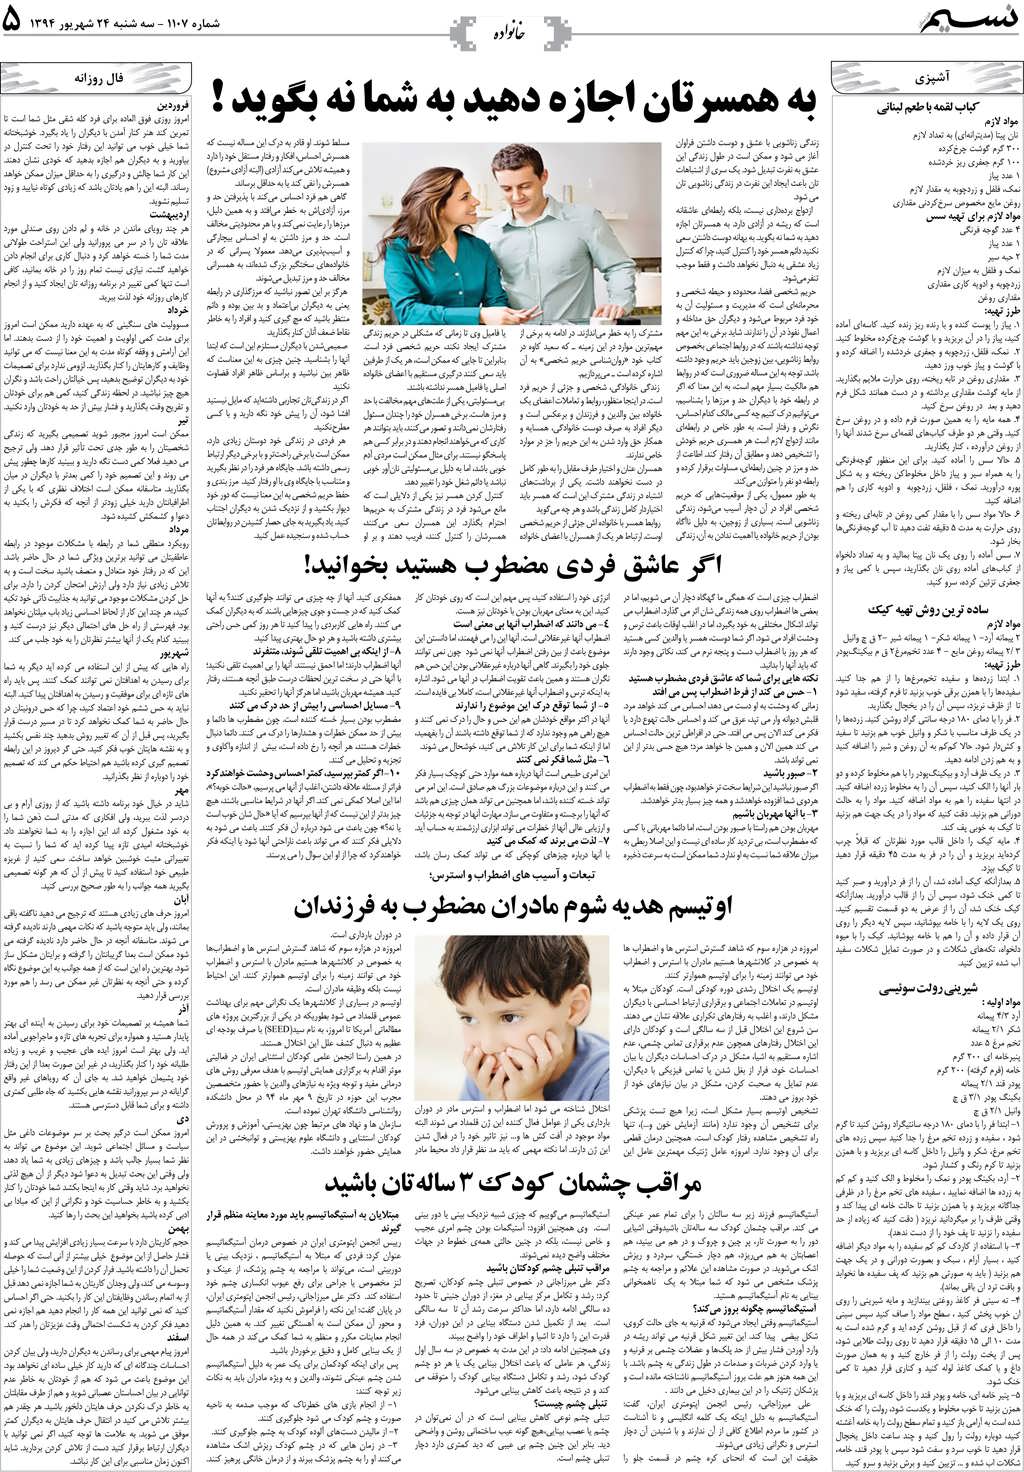 صفحه خانواده روزنامه نسیم شماره 1107